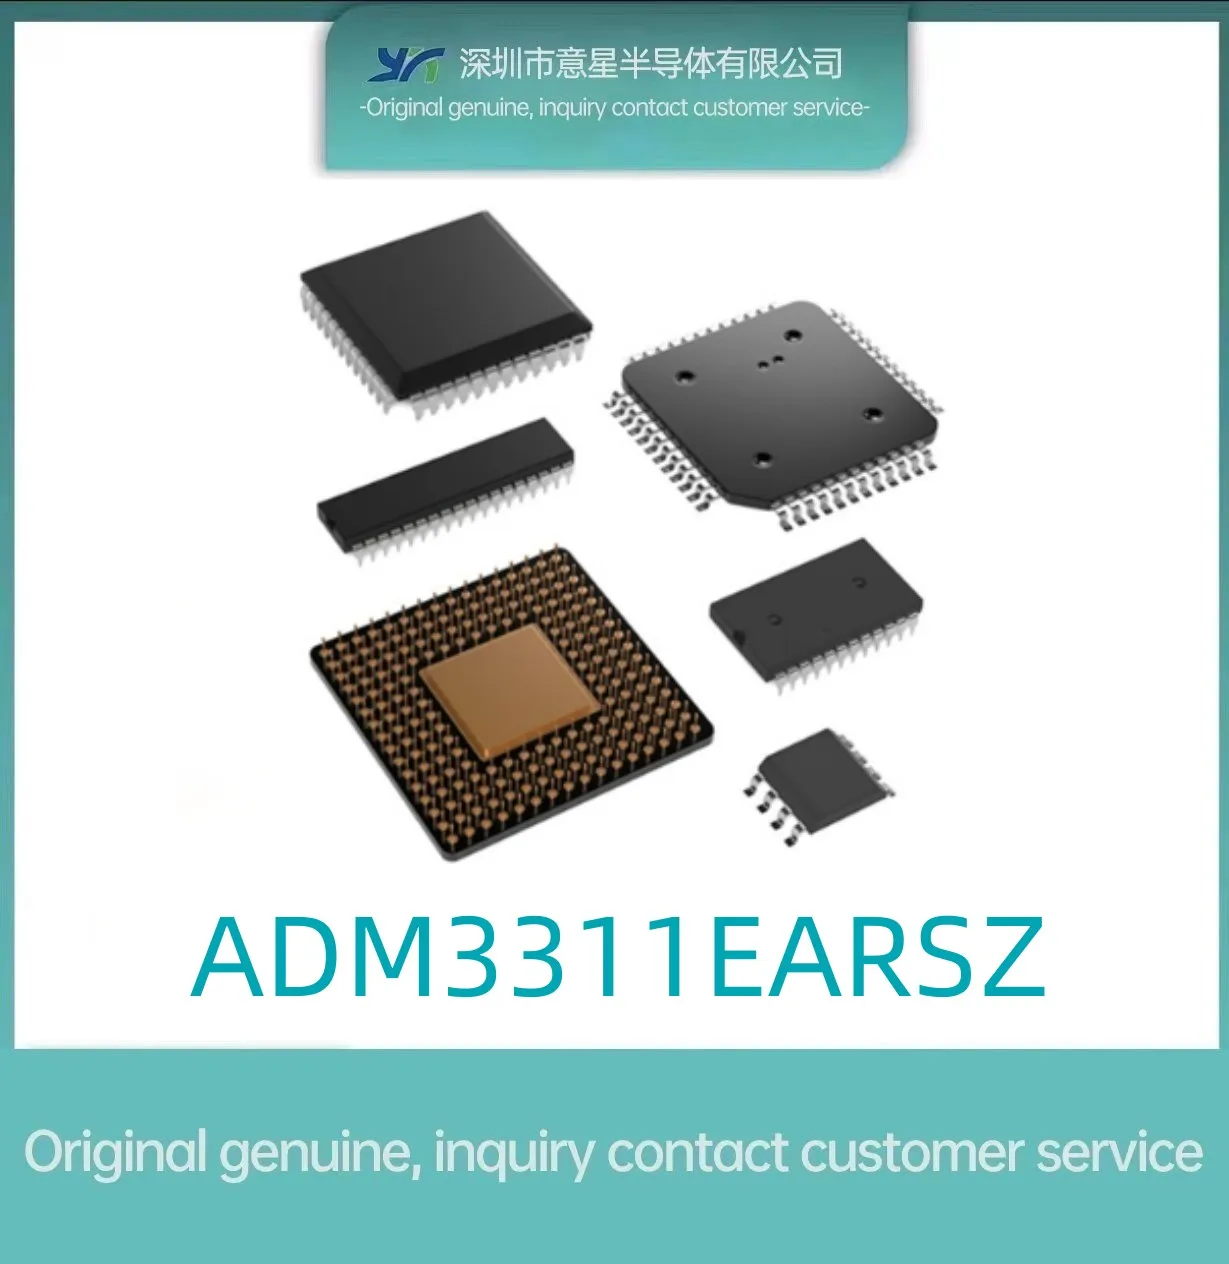 ADM3311EARSZ посылка SSOP28 интерфейс интегральная схема оригинальный аутентичный совершенно новый в наличии